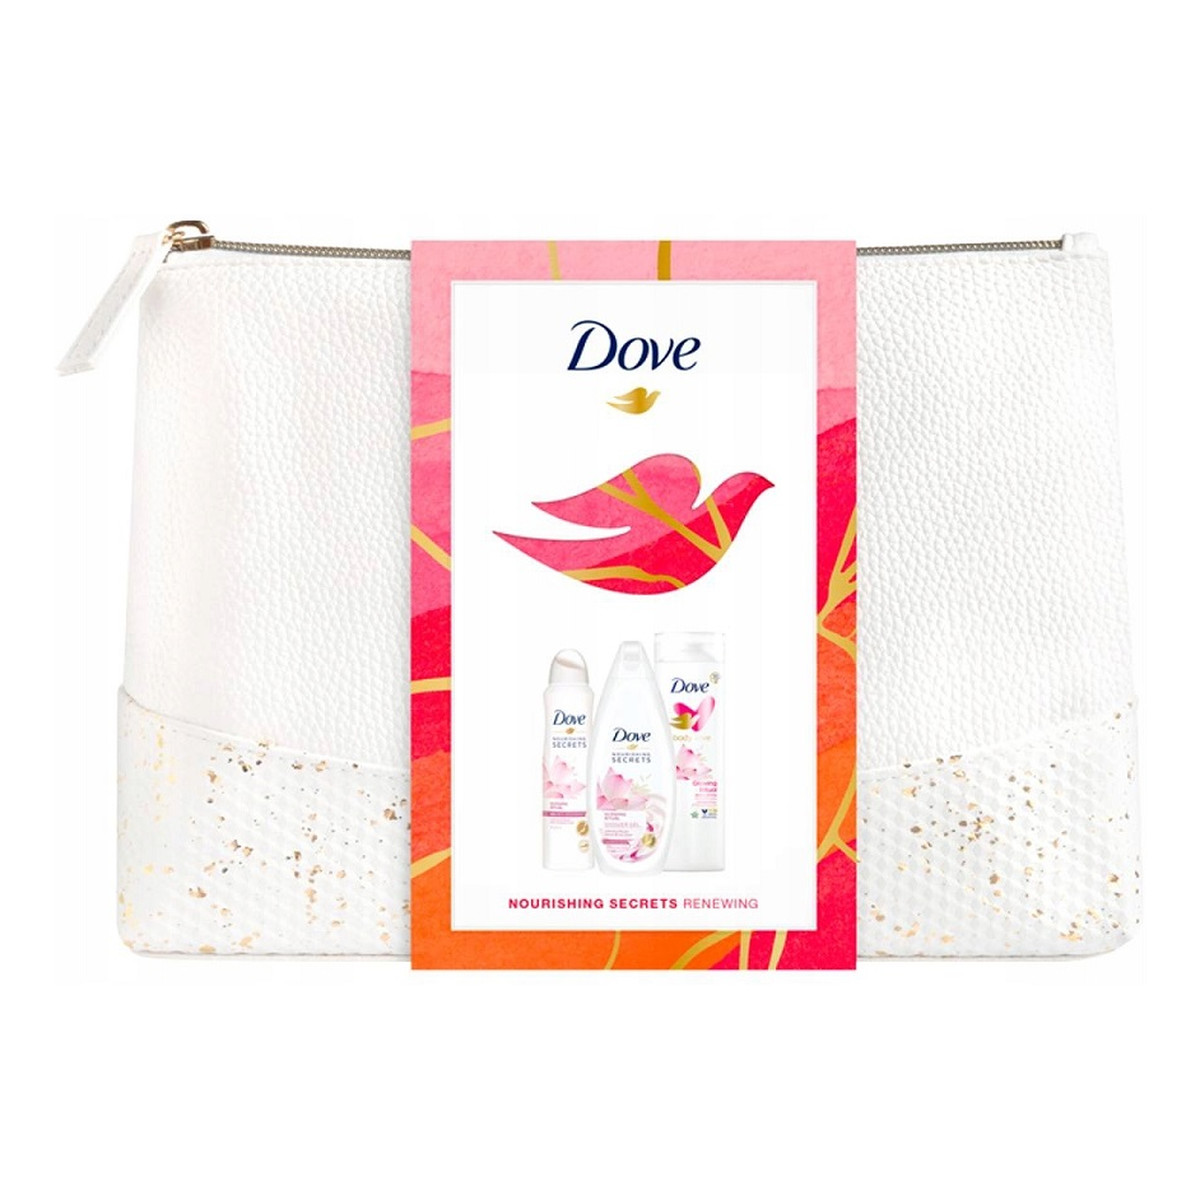 Dove Nourishing Secrets Renewing Zestaw żel pod prysznic 250ml + balsam do ciała 250ml + antyperspirant spray 150ml + kosmetyczka